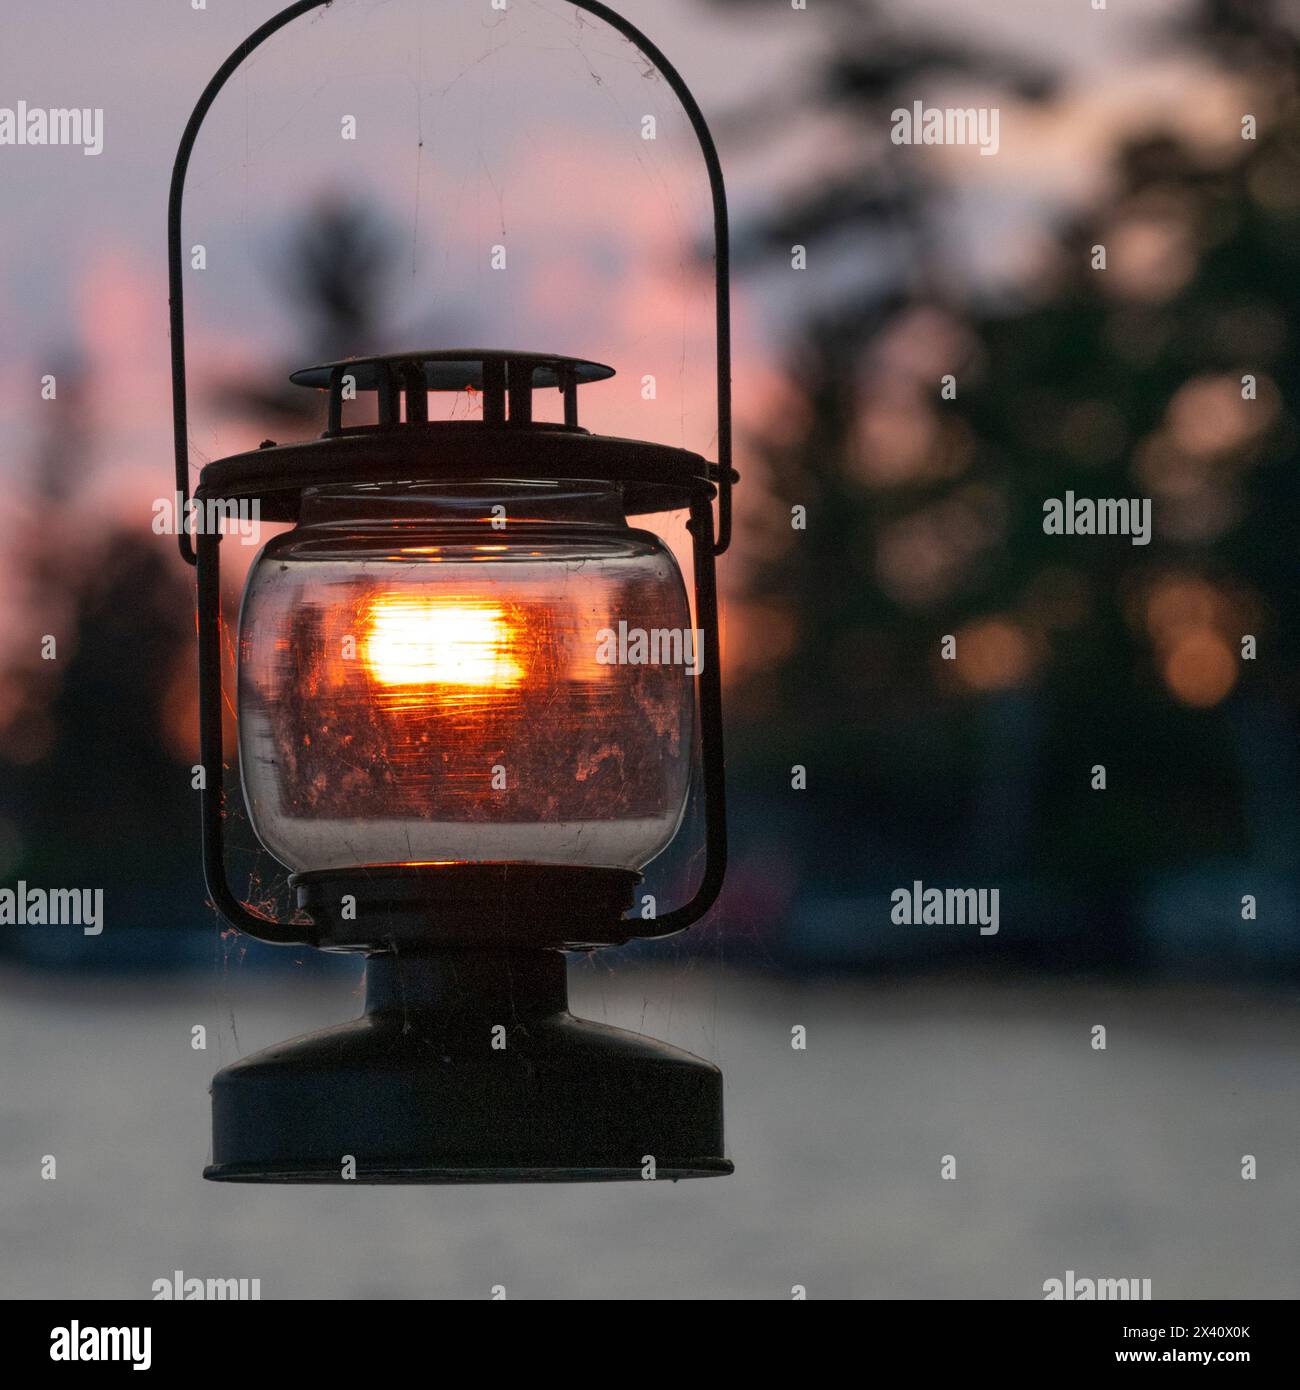 La lumière du coucher de soleil brille et illumine le verre d'une lanterne en métal noir ; Lake of the Woods, Ontario, Canada Banque D'Images